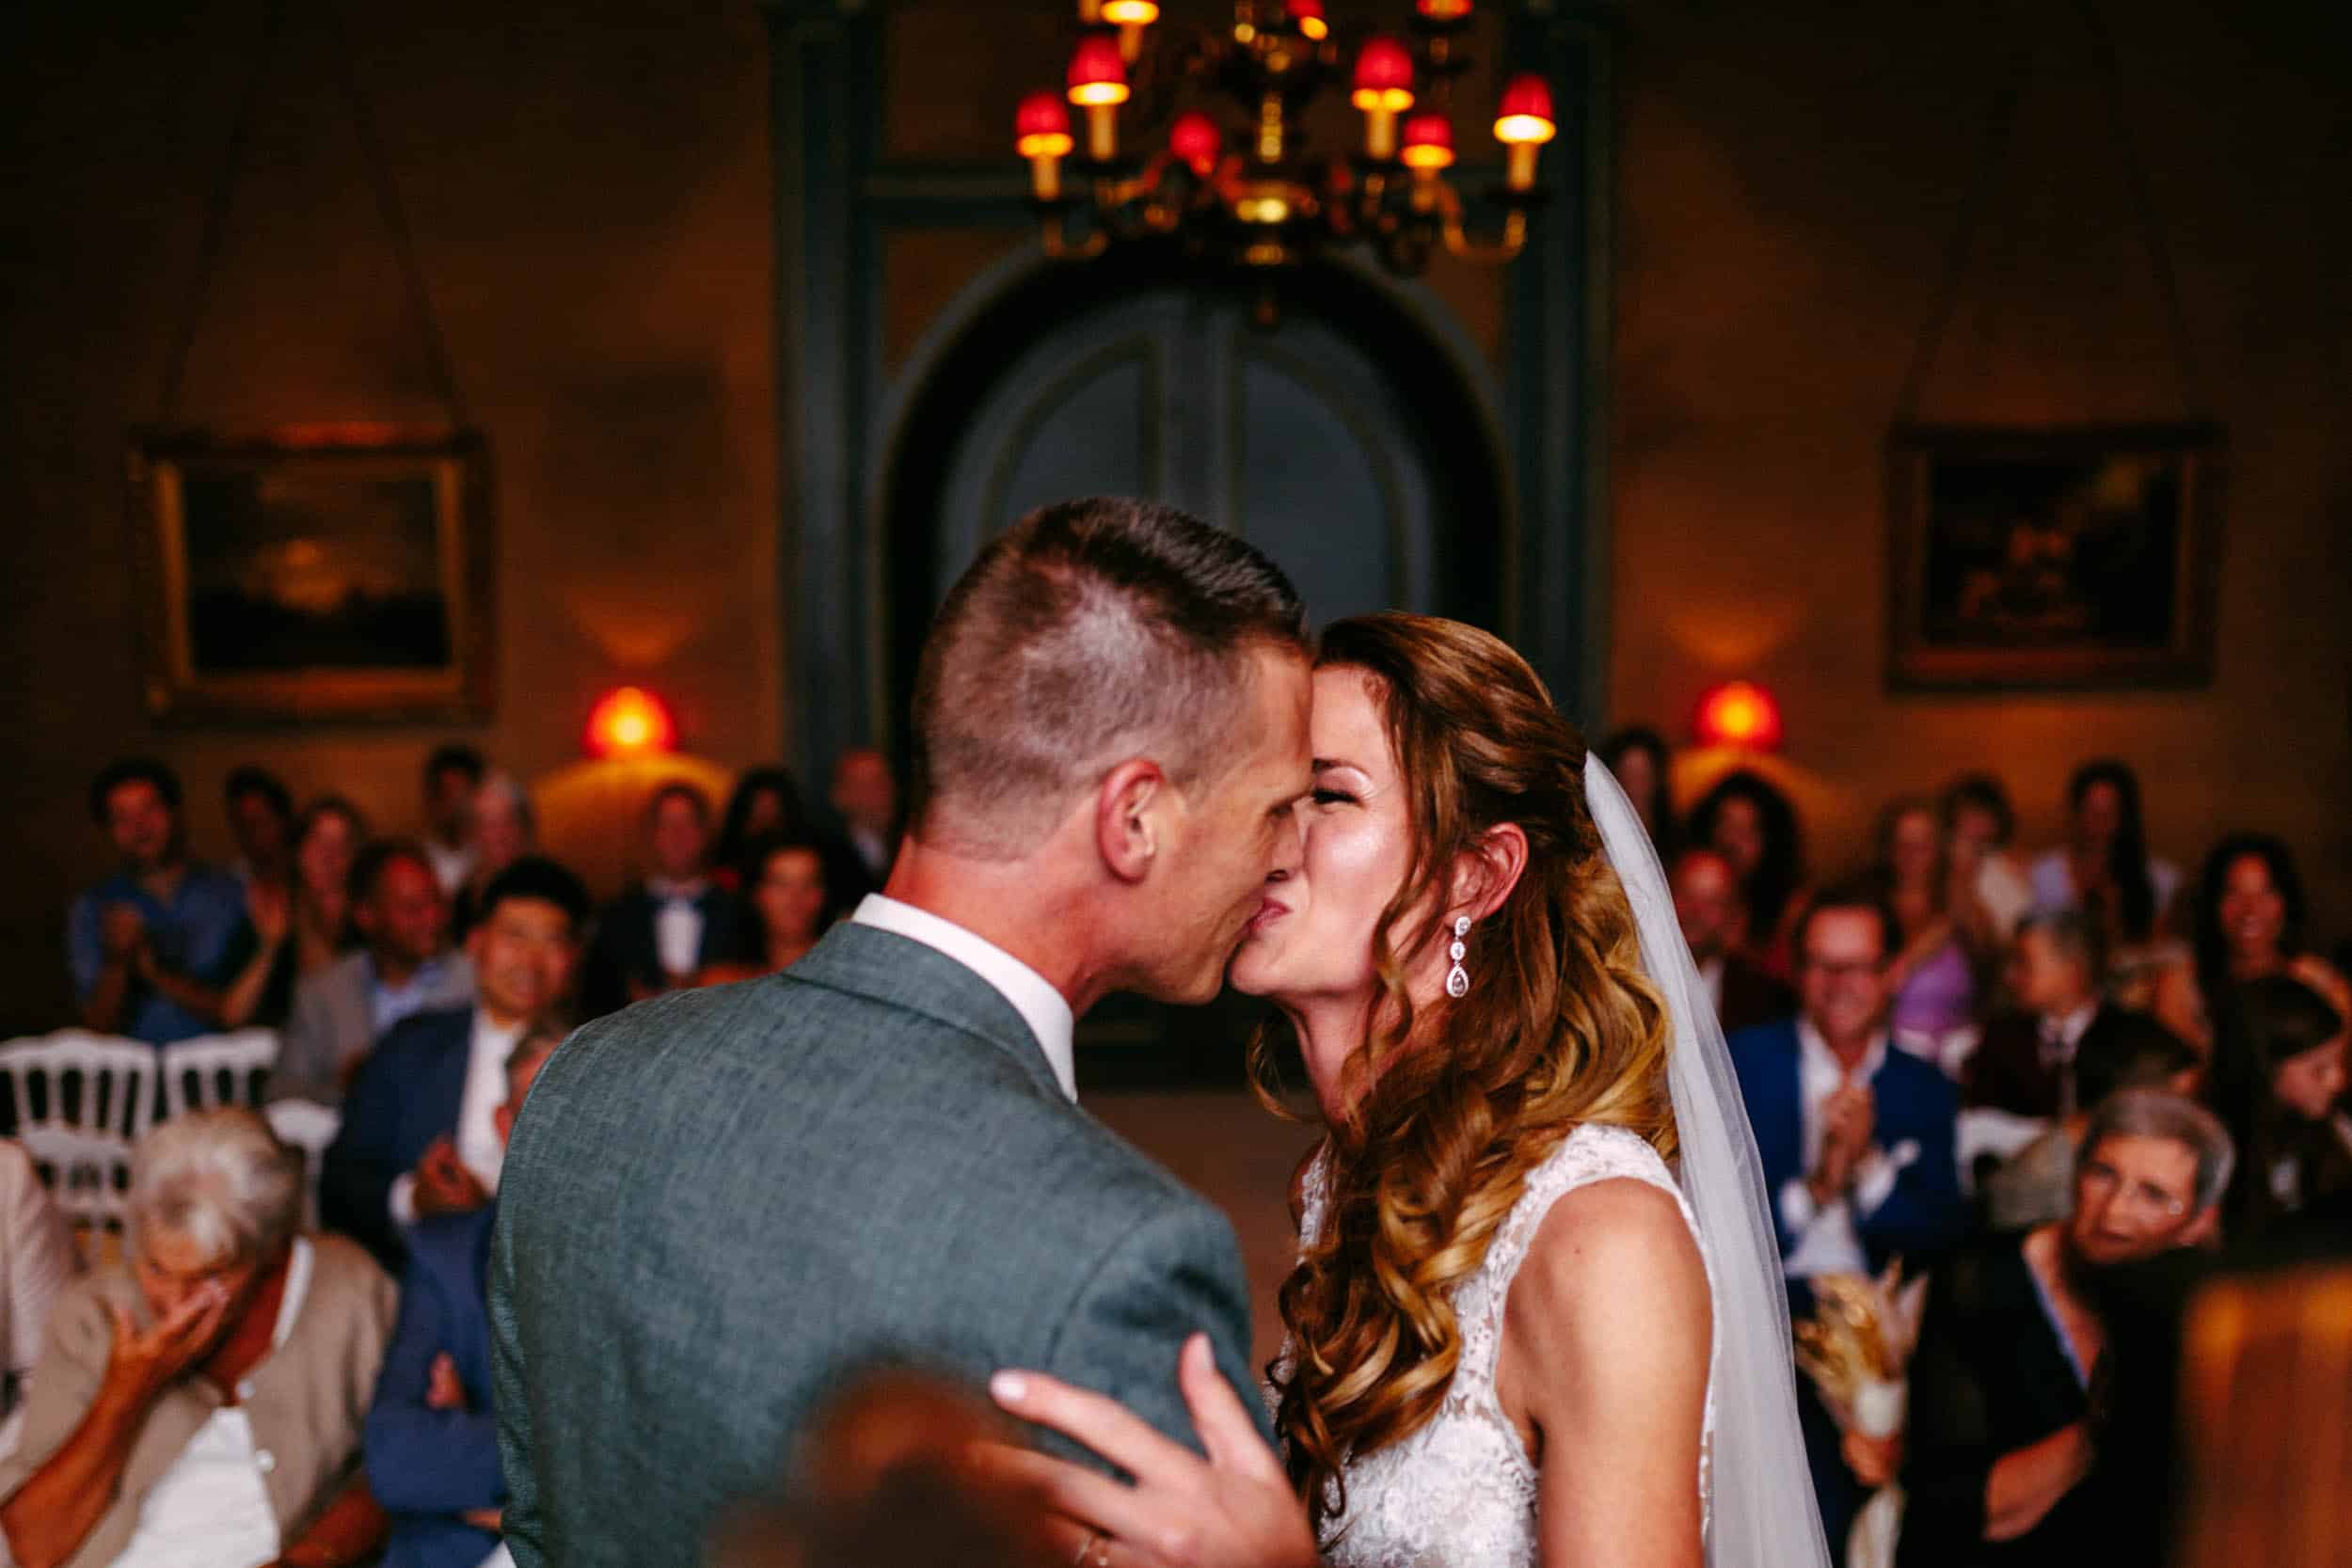 Het perfecte huwelijksmoment vastgelegd: een kus van bruid en bruidegom tijdens hun huwelijksceremonie, prachtig gefotografeerd door een getalenteerde trouwfotograaf.